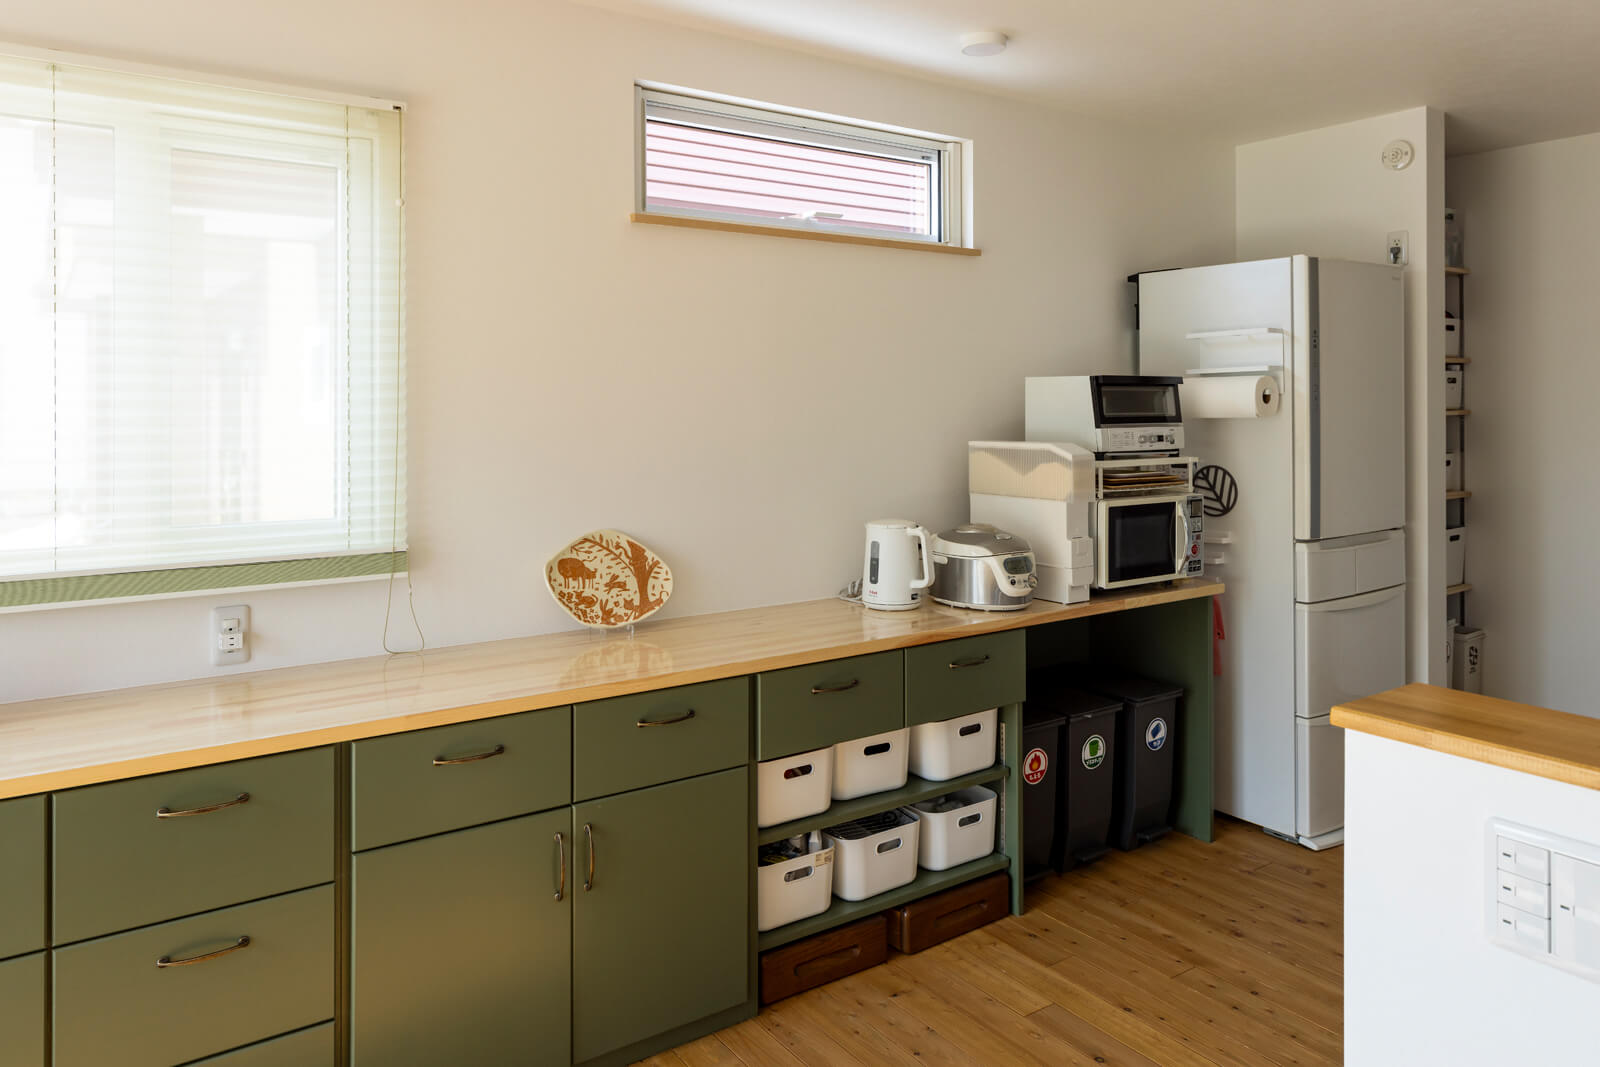 渋いグリーンの面材を用いたキッチンの背面収納は造作仕様。冷蔵庫の横には造作棚を設け、収納力抜群。買い置き食材の整理もしやすい